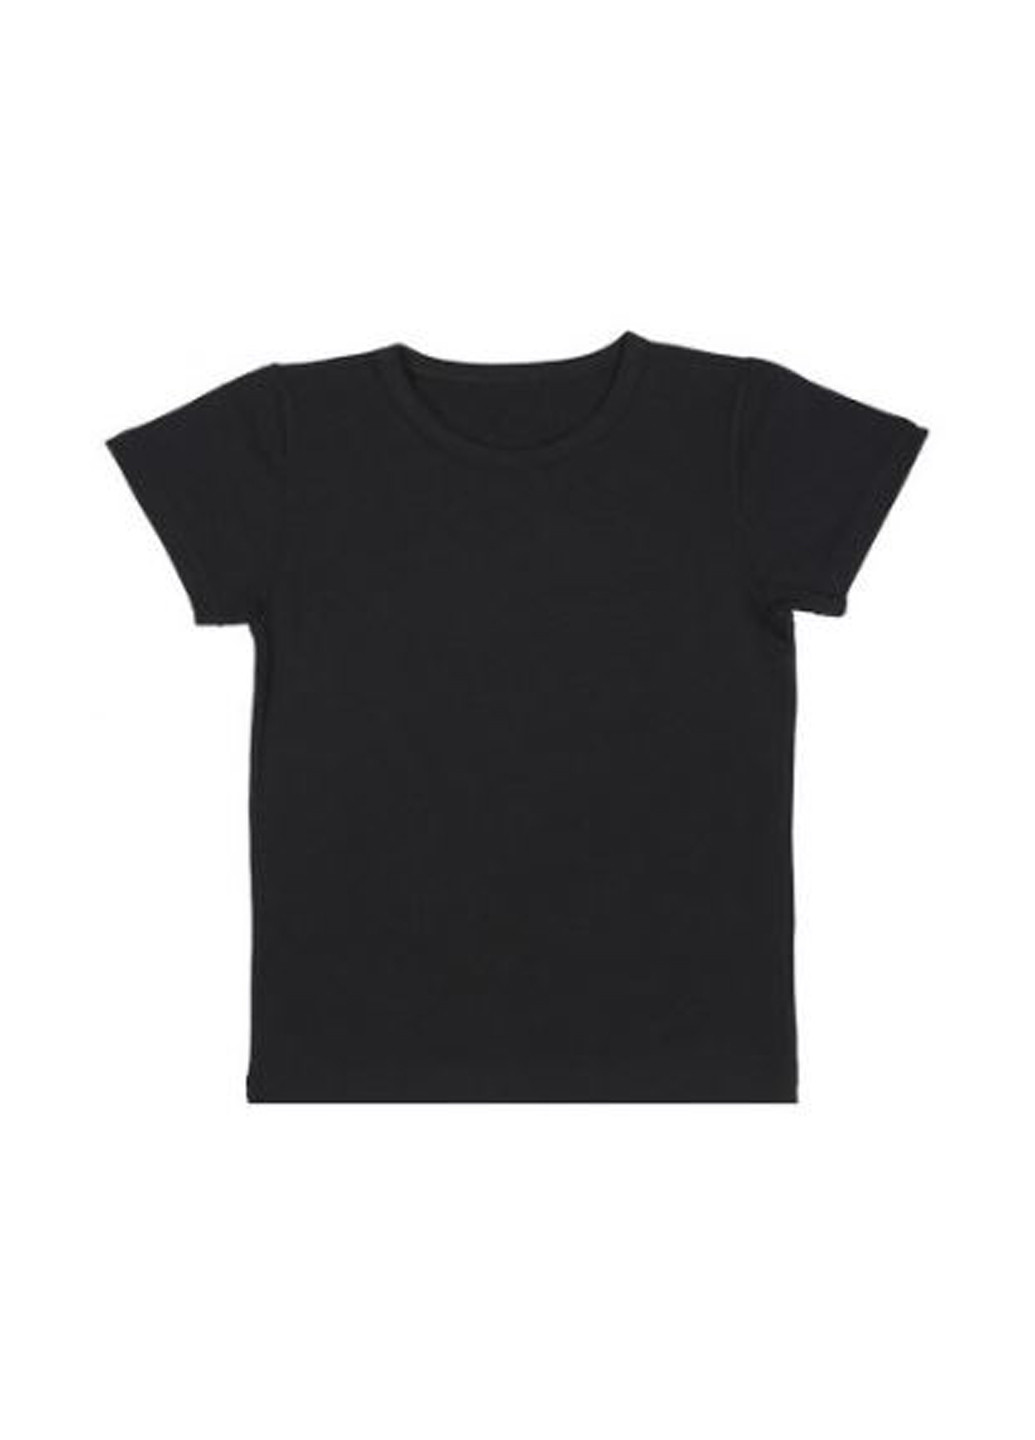 Черная демисезонная футболка (5 шт.) Doni